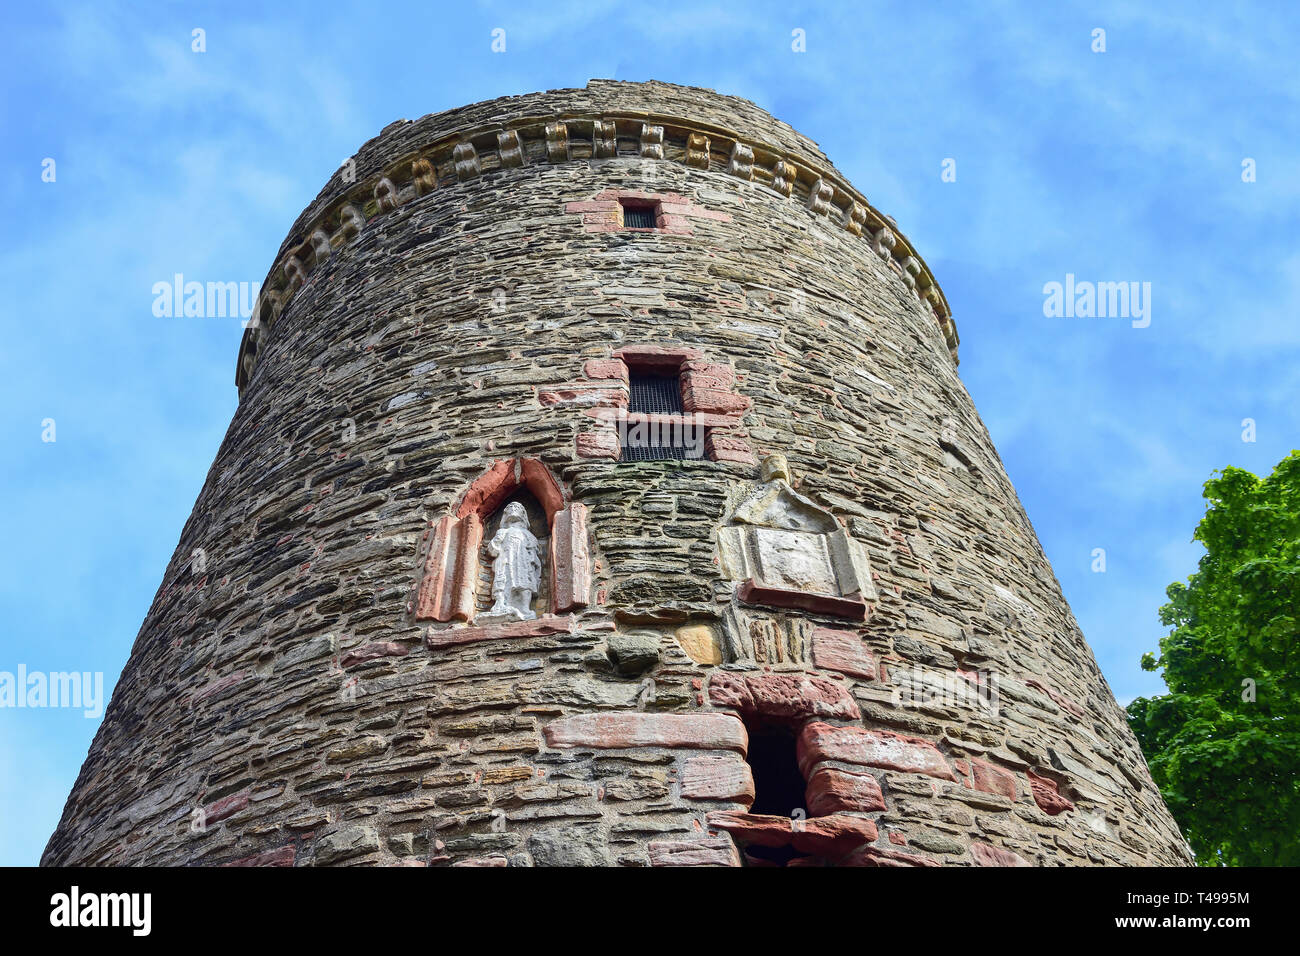 17e siècle Tower de l'Earl's Palace, le Watergate, Kirkwall, le continent, les îles Orcades, îles du Nord, Ecosse, Royaume-Uni Banque D'Images